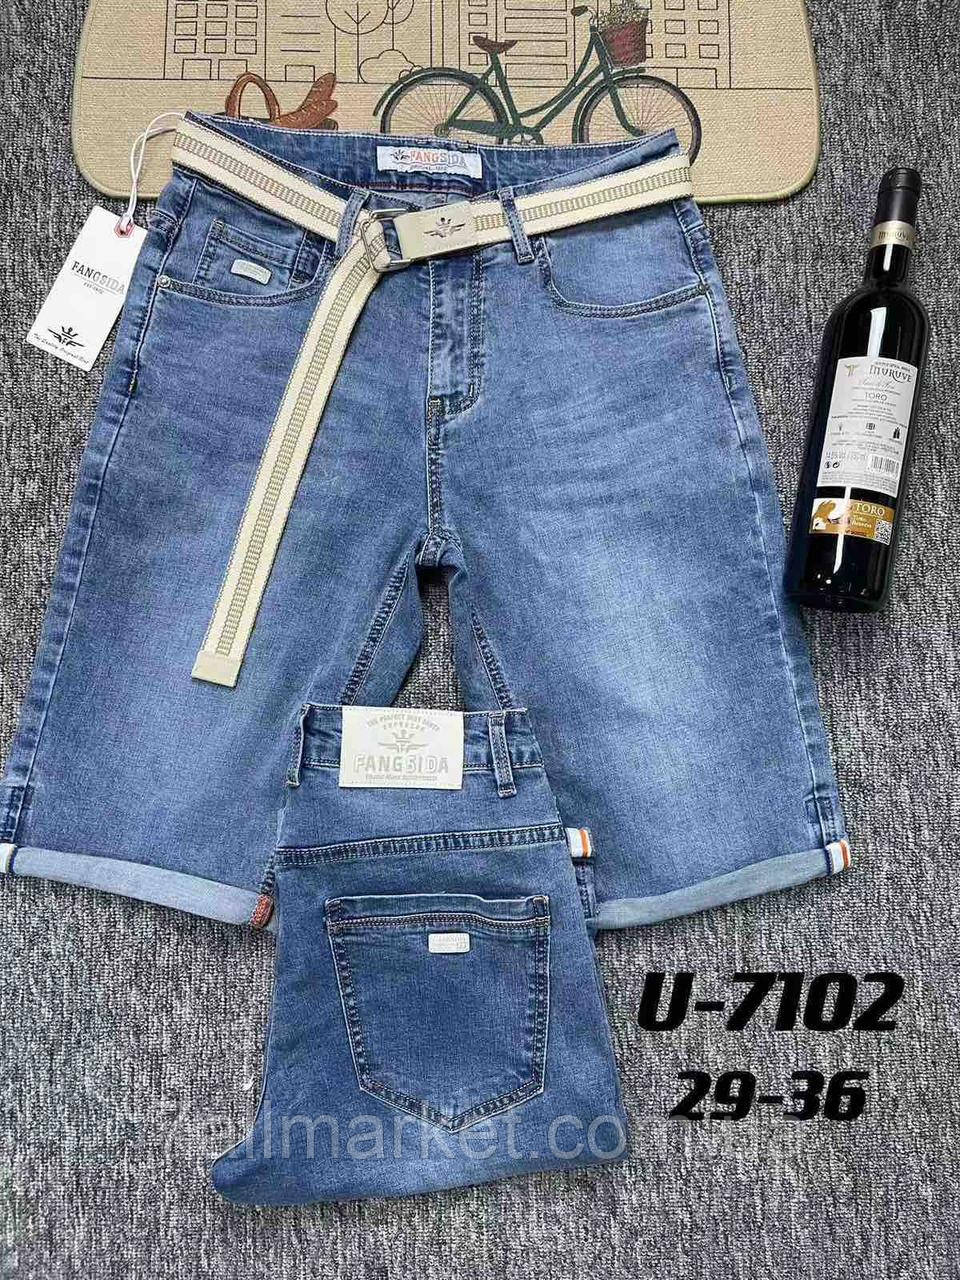 Шорти чоловічі джинсові розміри 29-36 "ROOS" купити недорого від прямого постачальника